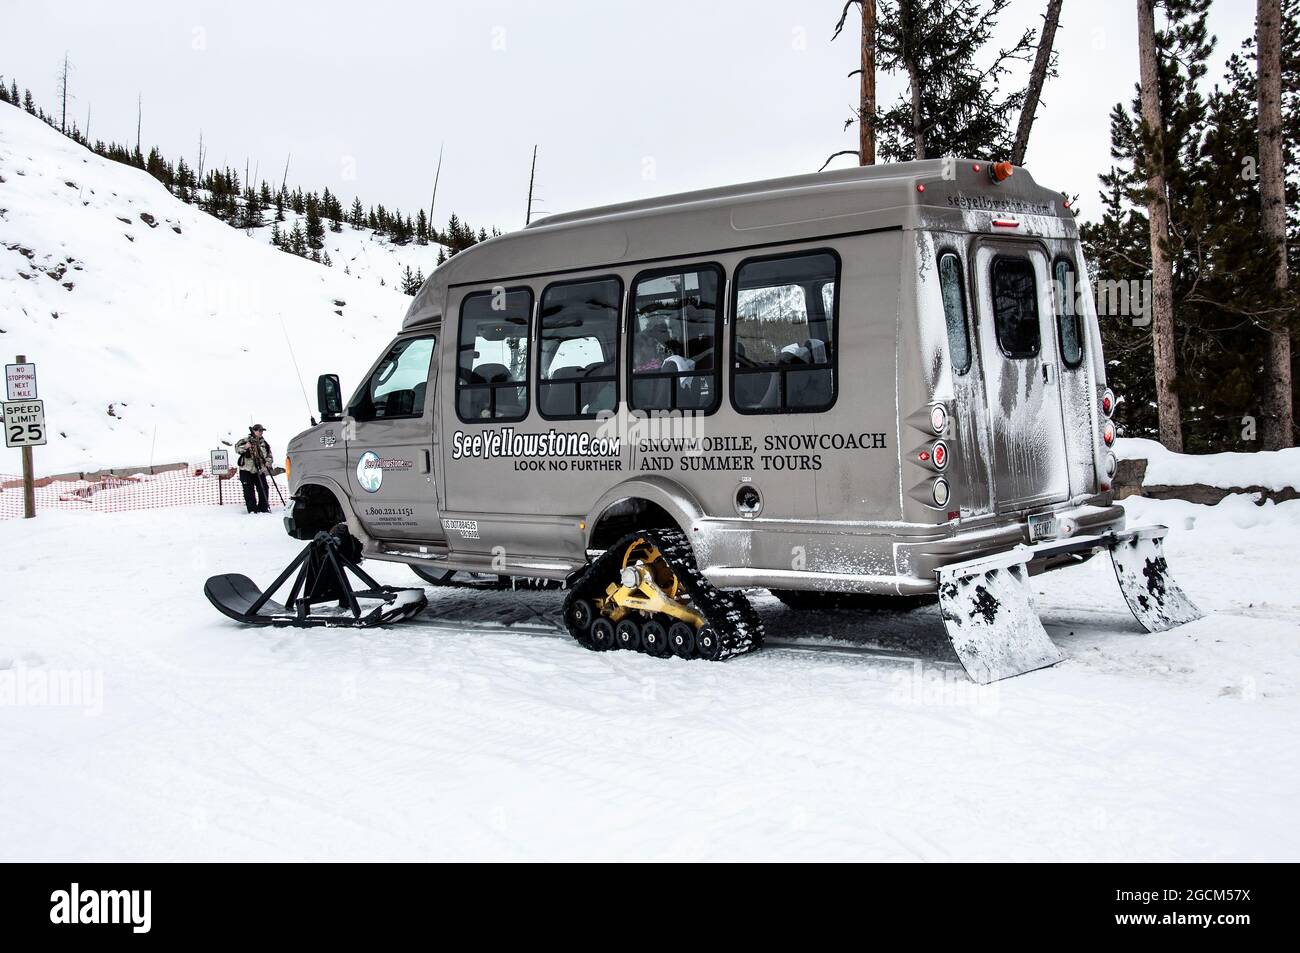 Snowcoach, minibus converti pour des visites sur des routes enneigées, parc national de Yellowstone Banque D'Images